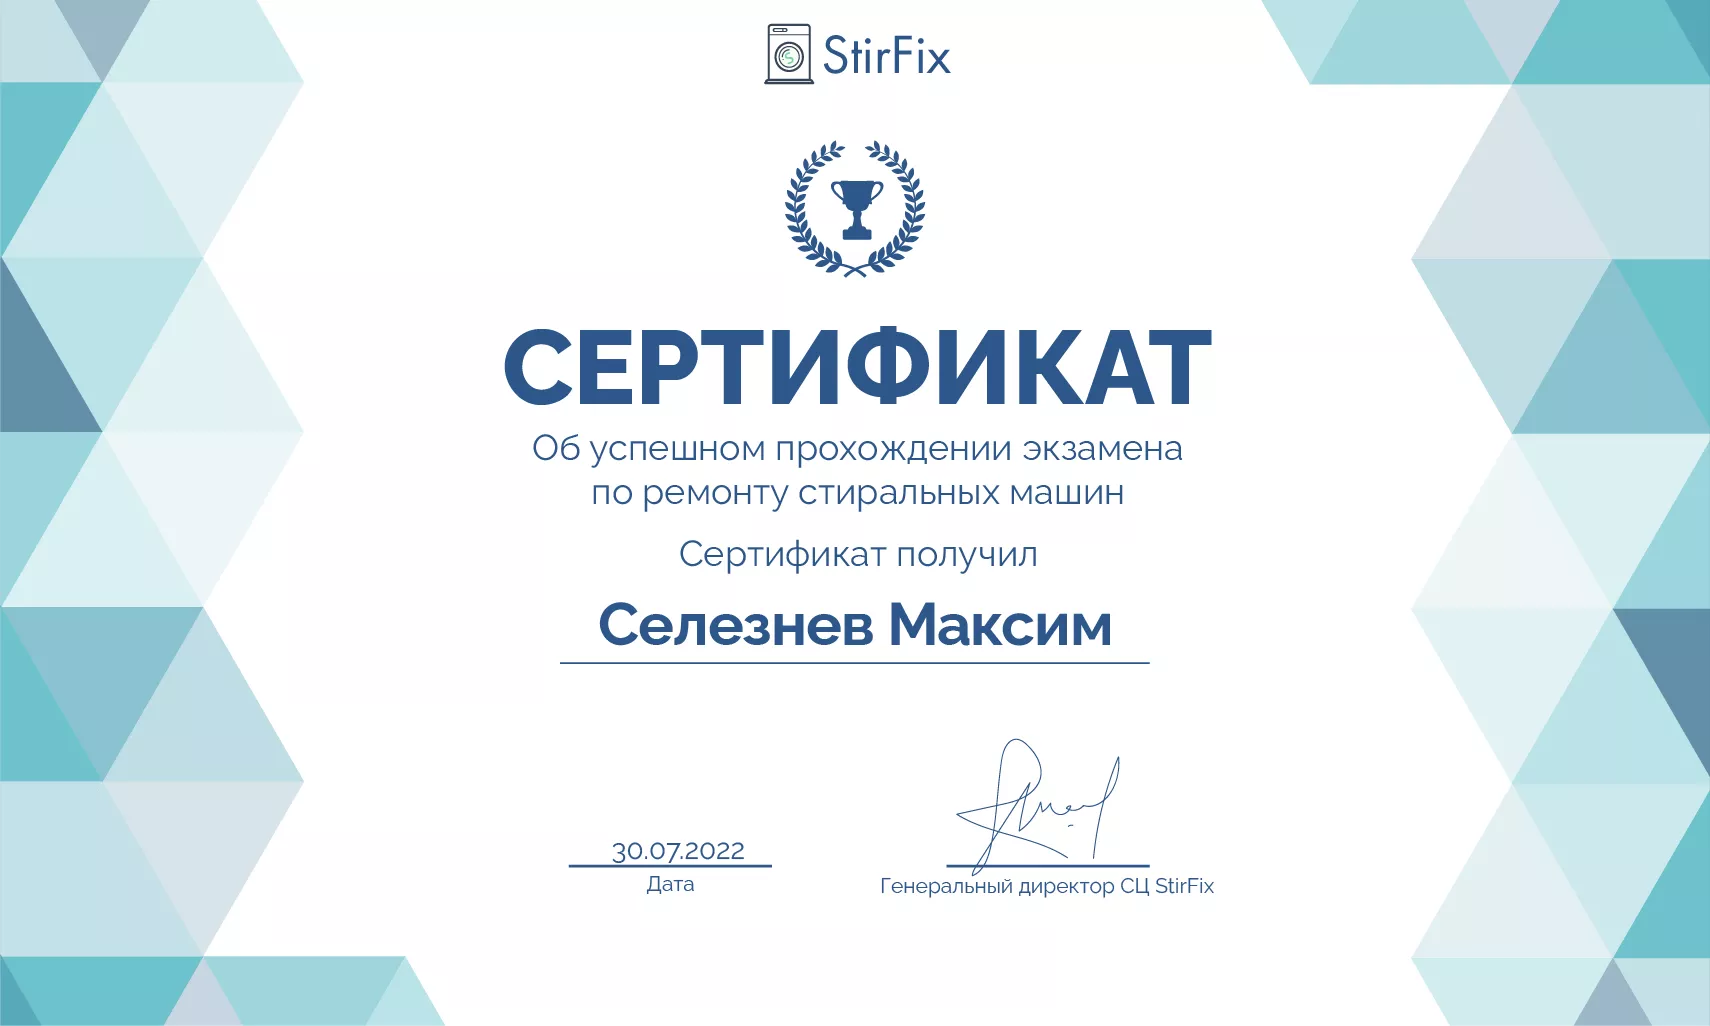 Селезнев Максим сертификат мастера по ремонту стиральных машин